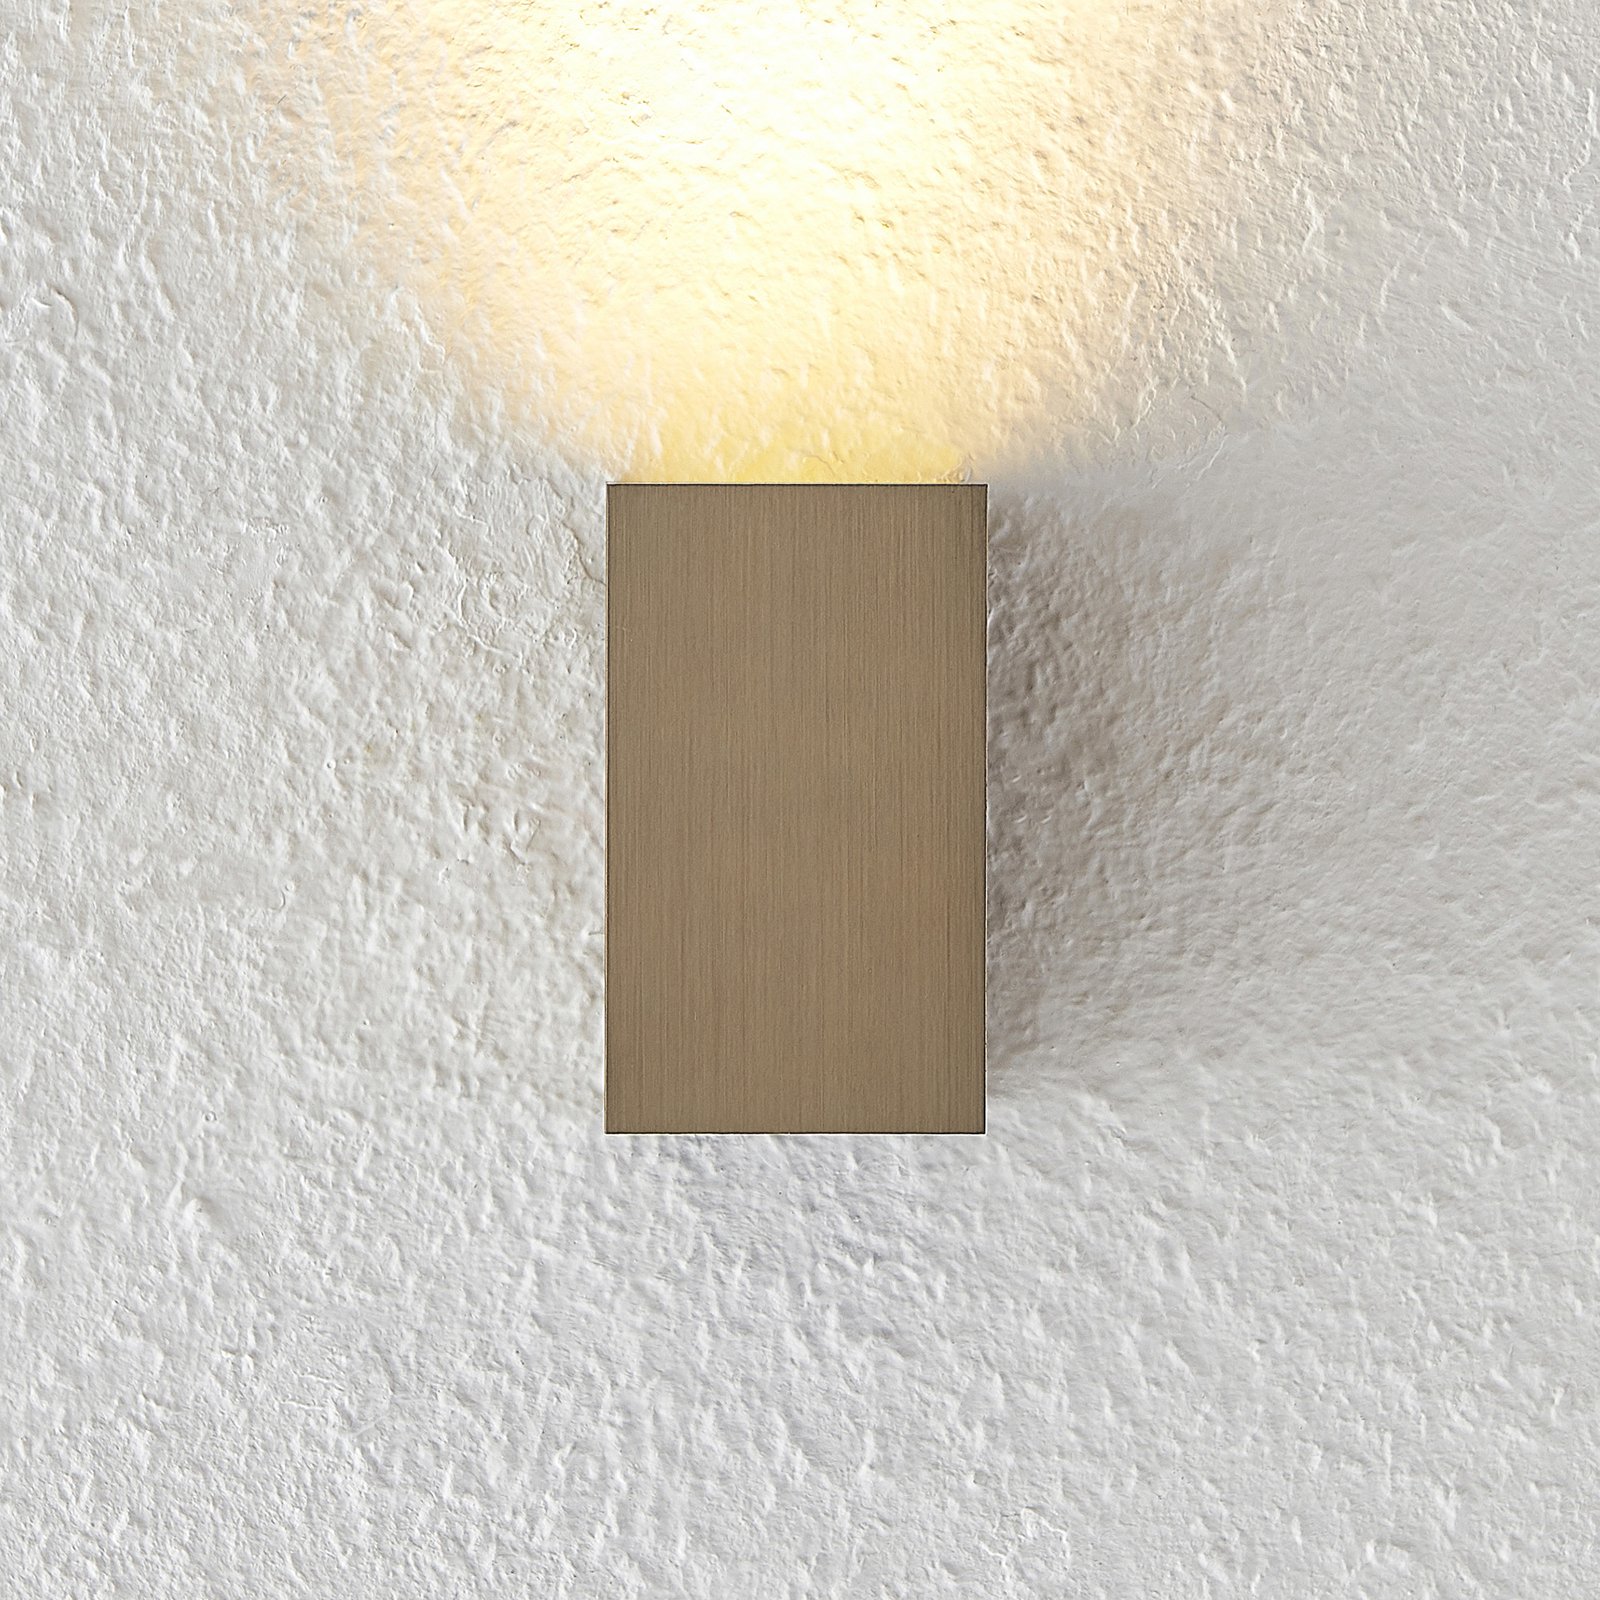 Arcchio Maruba wall light, 1-bulb, brown